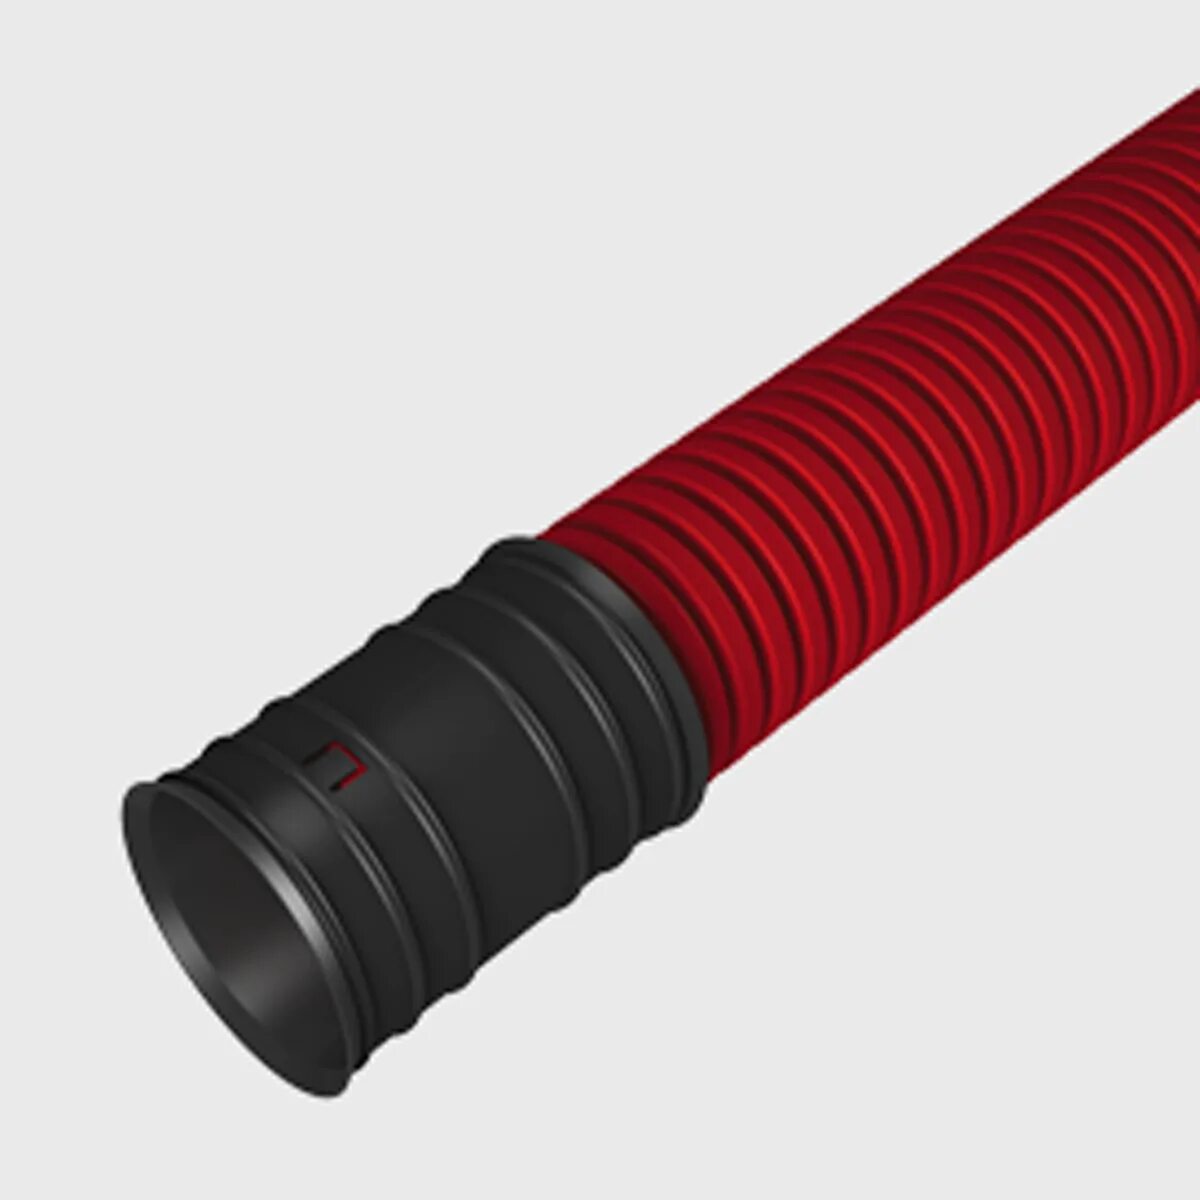 Гофра труба для кабеля. Труба канализационная 110 гофрированная двустенная. Труба гофрированная 110 мм красная. Гофрированная труба 110 мм (Flex). Двустенная гофрированная труба Ду 110.